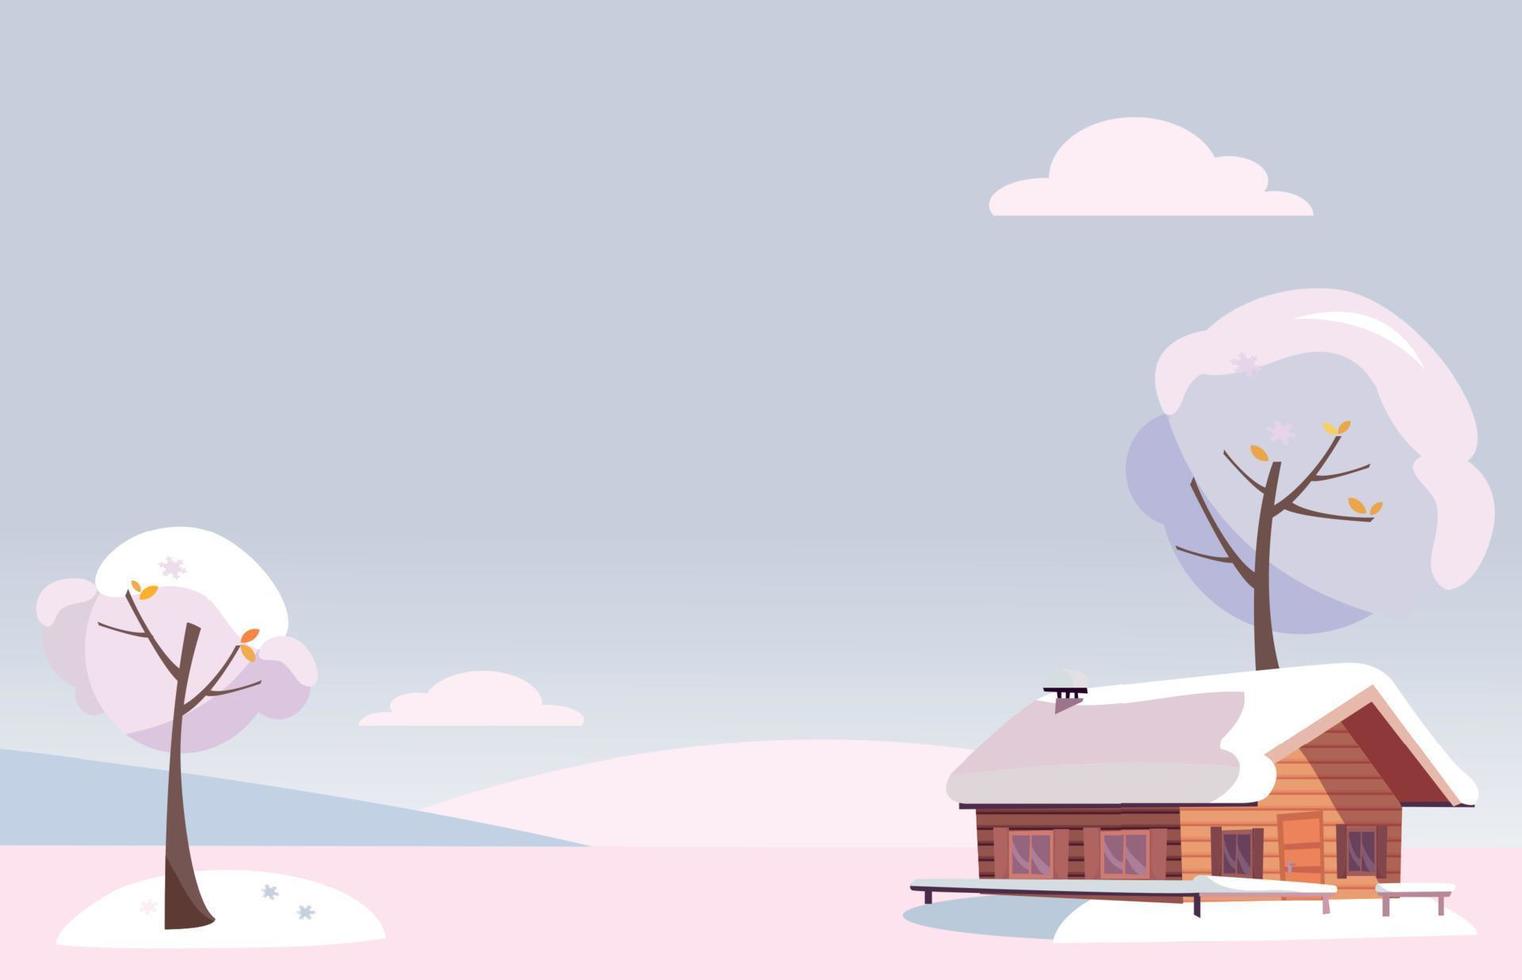 image vectorielle paysage d'hiver enneigé blanc plat avec petite maison de campagne et arbres couverts de neige sur les collines enneigées dans les bois enneigés. fond de Noël en style cartoon. espace libre pour votre texte vecteur